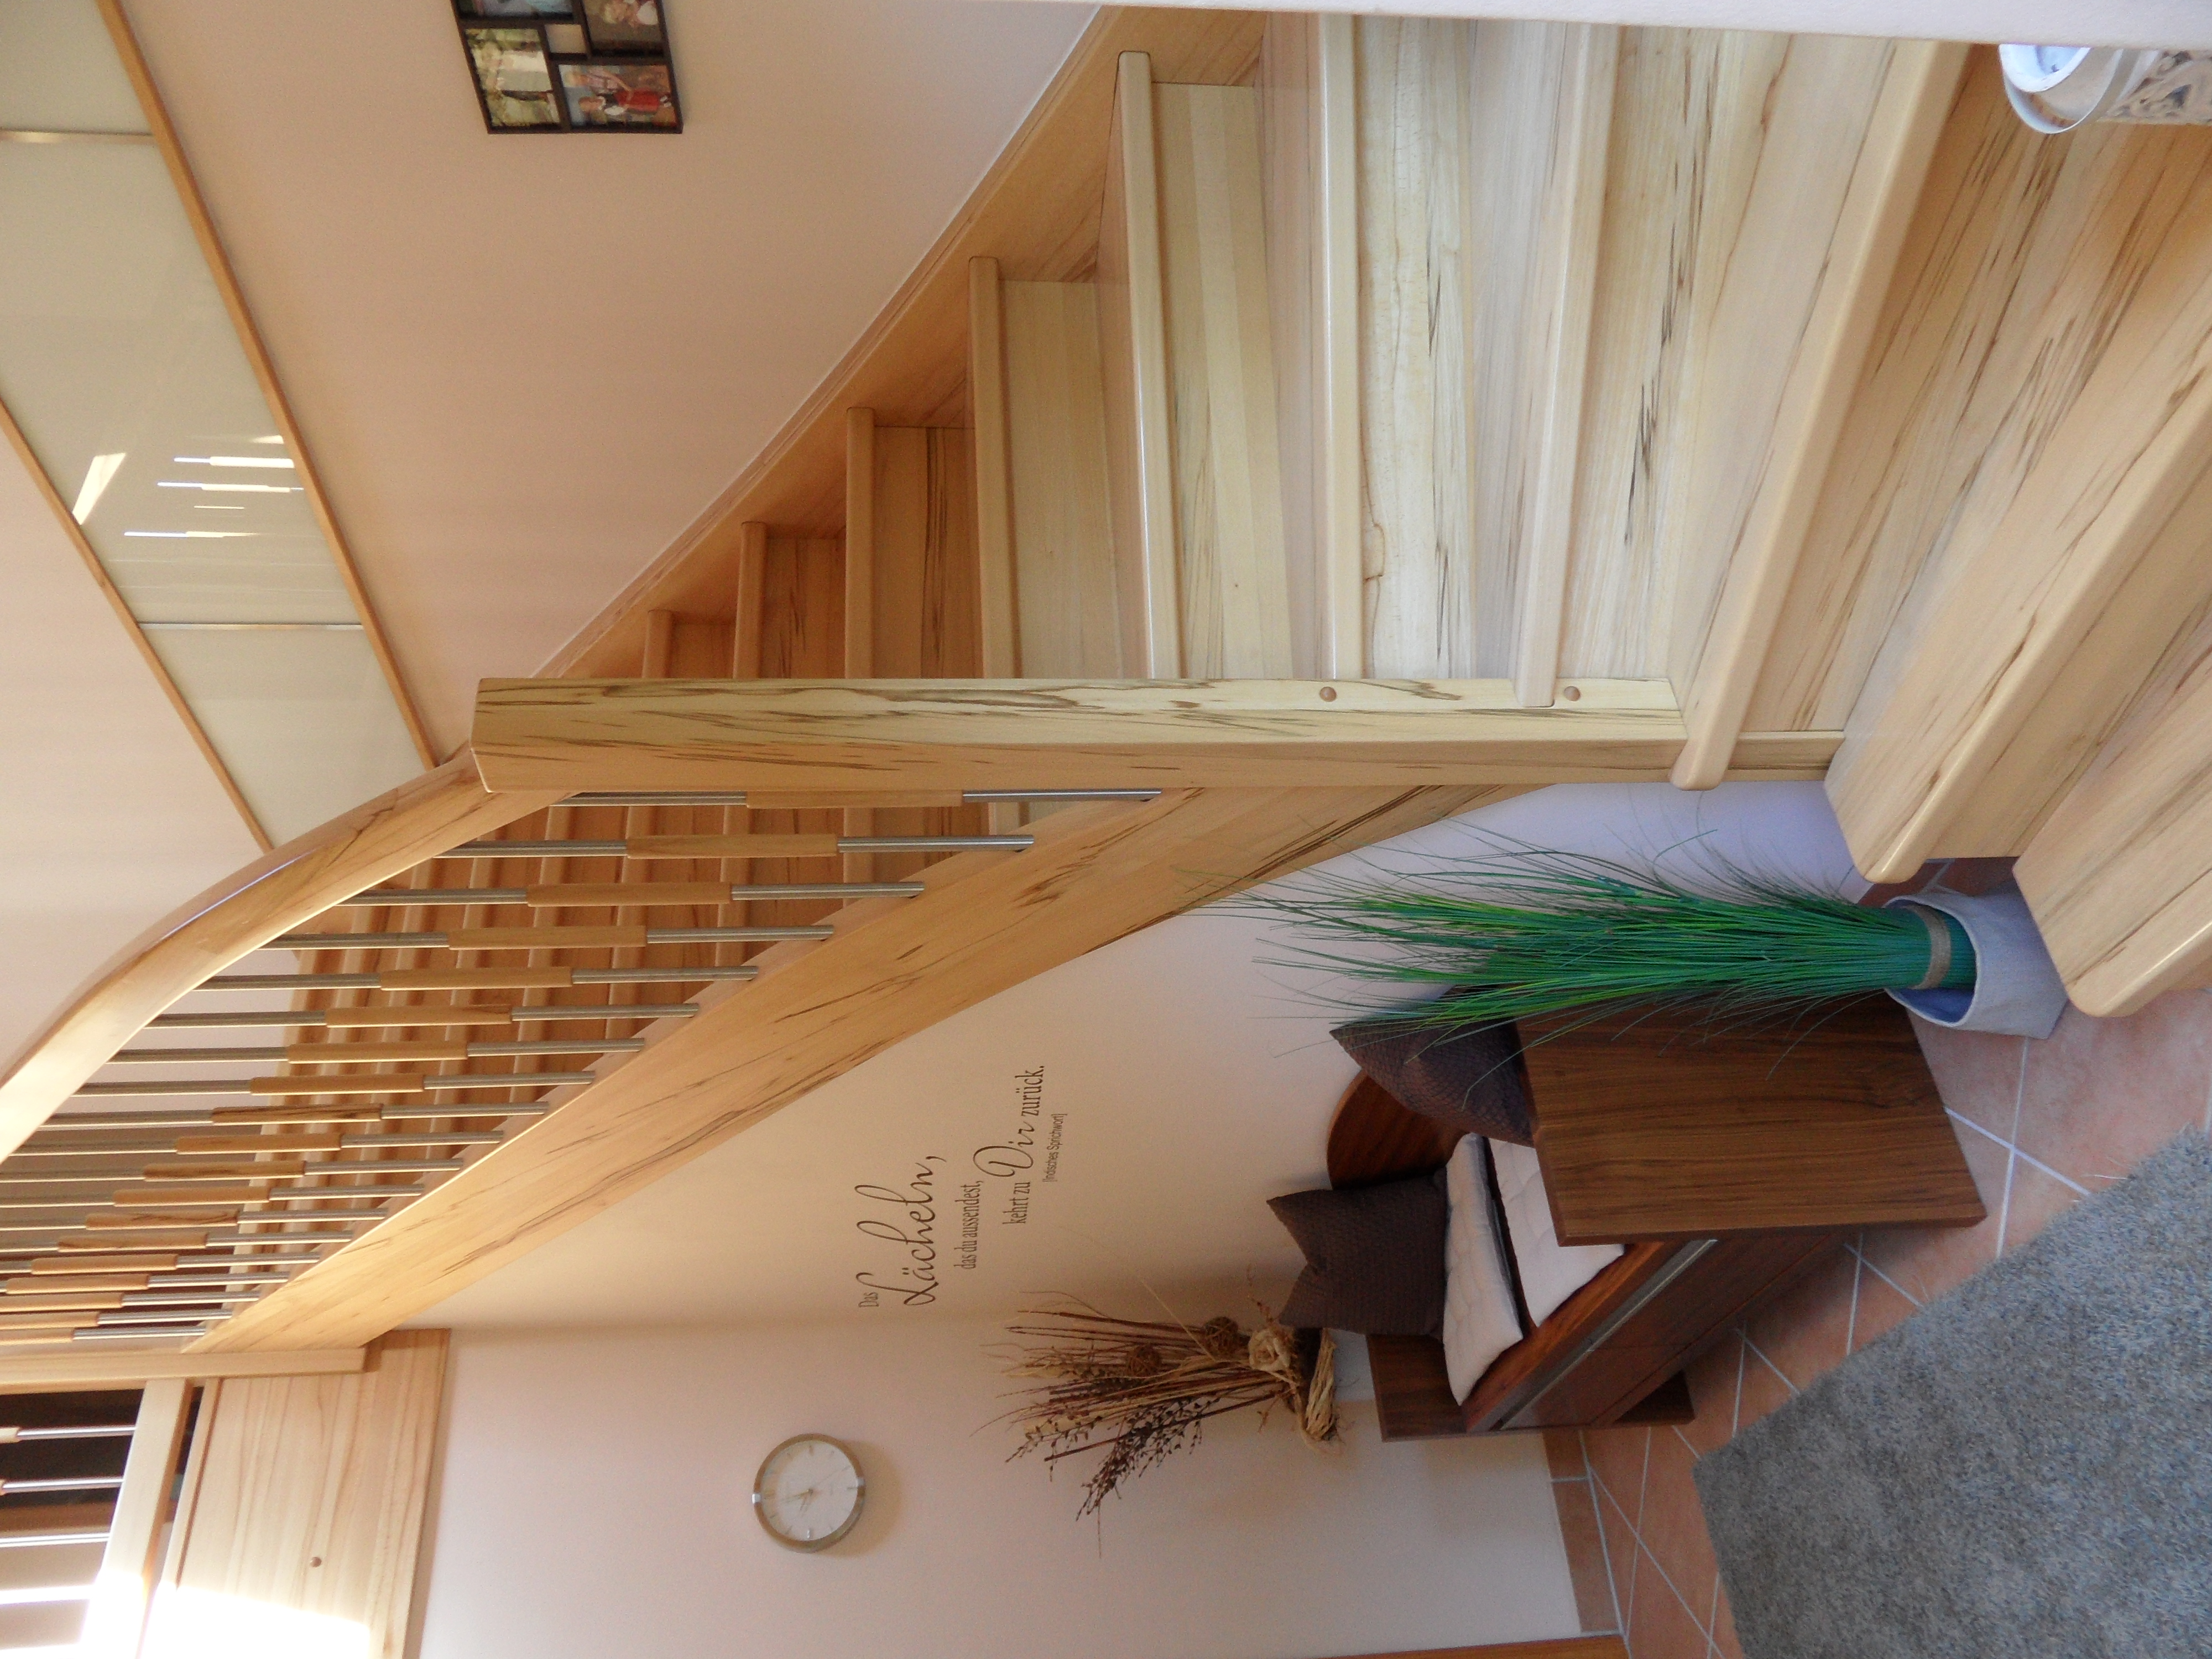 Bild eine Treppe mit Holzgeländer und Holz-Metall-Stäben